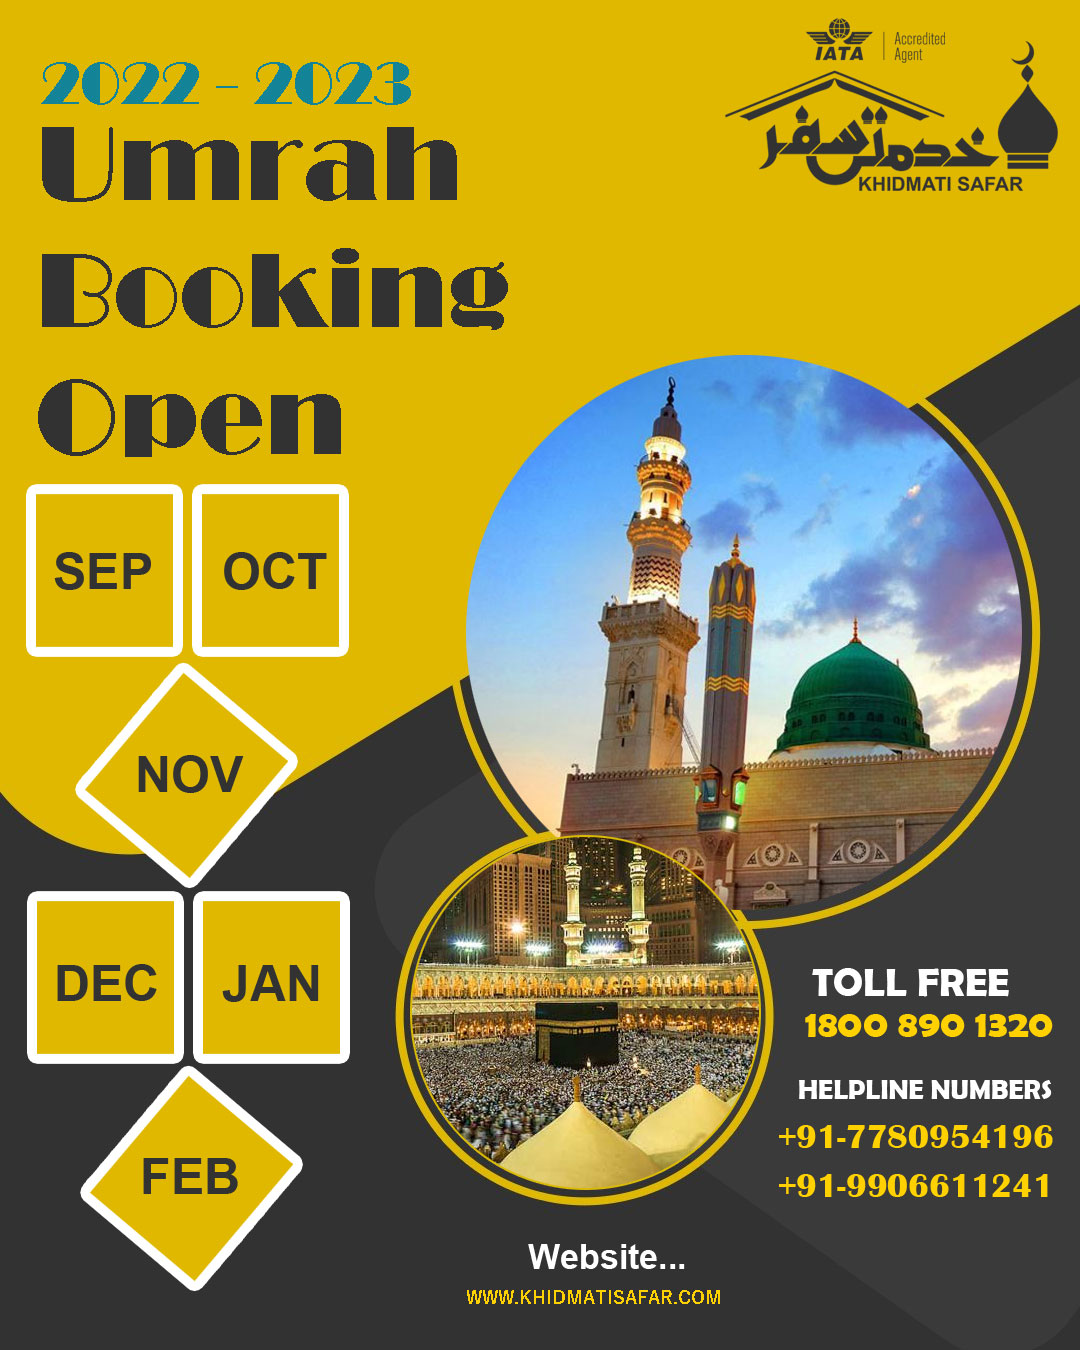 Umrah Services and Umrah Facilities